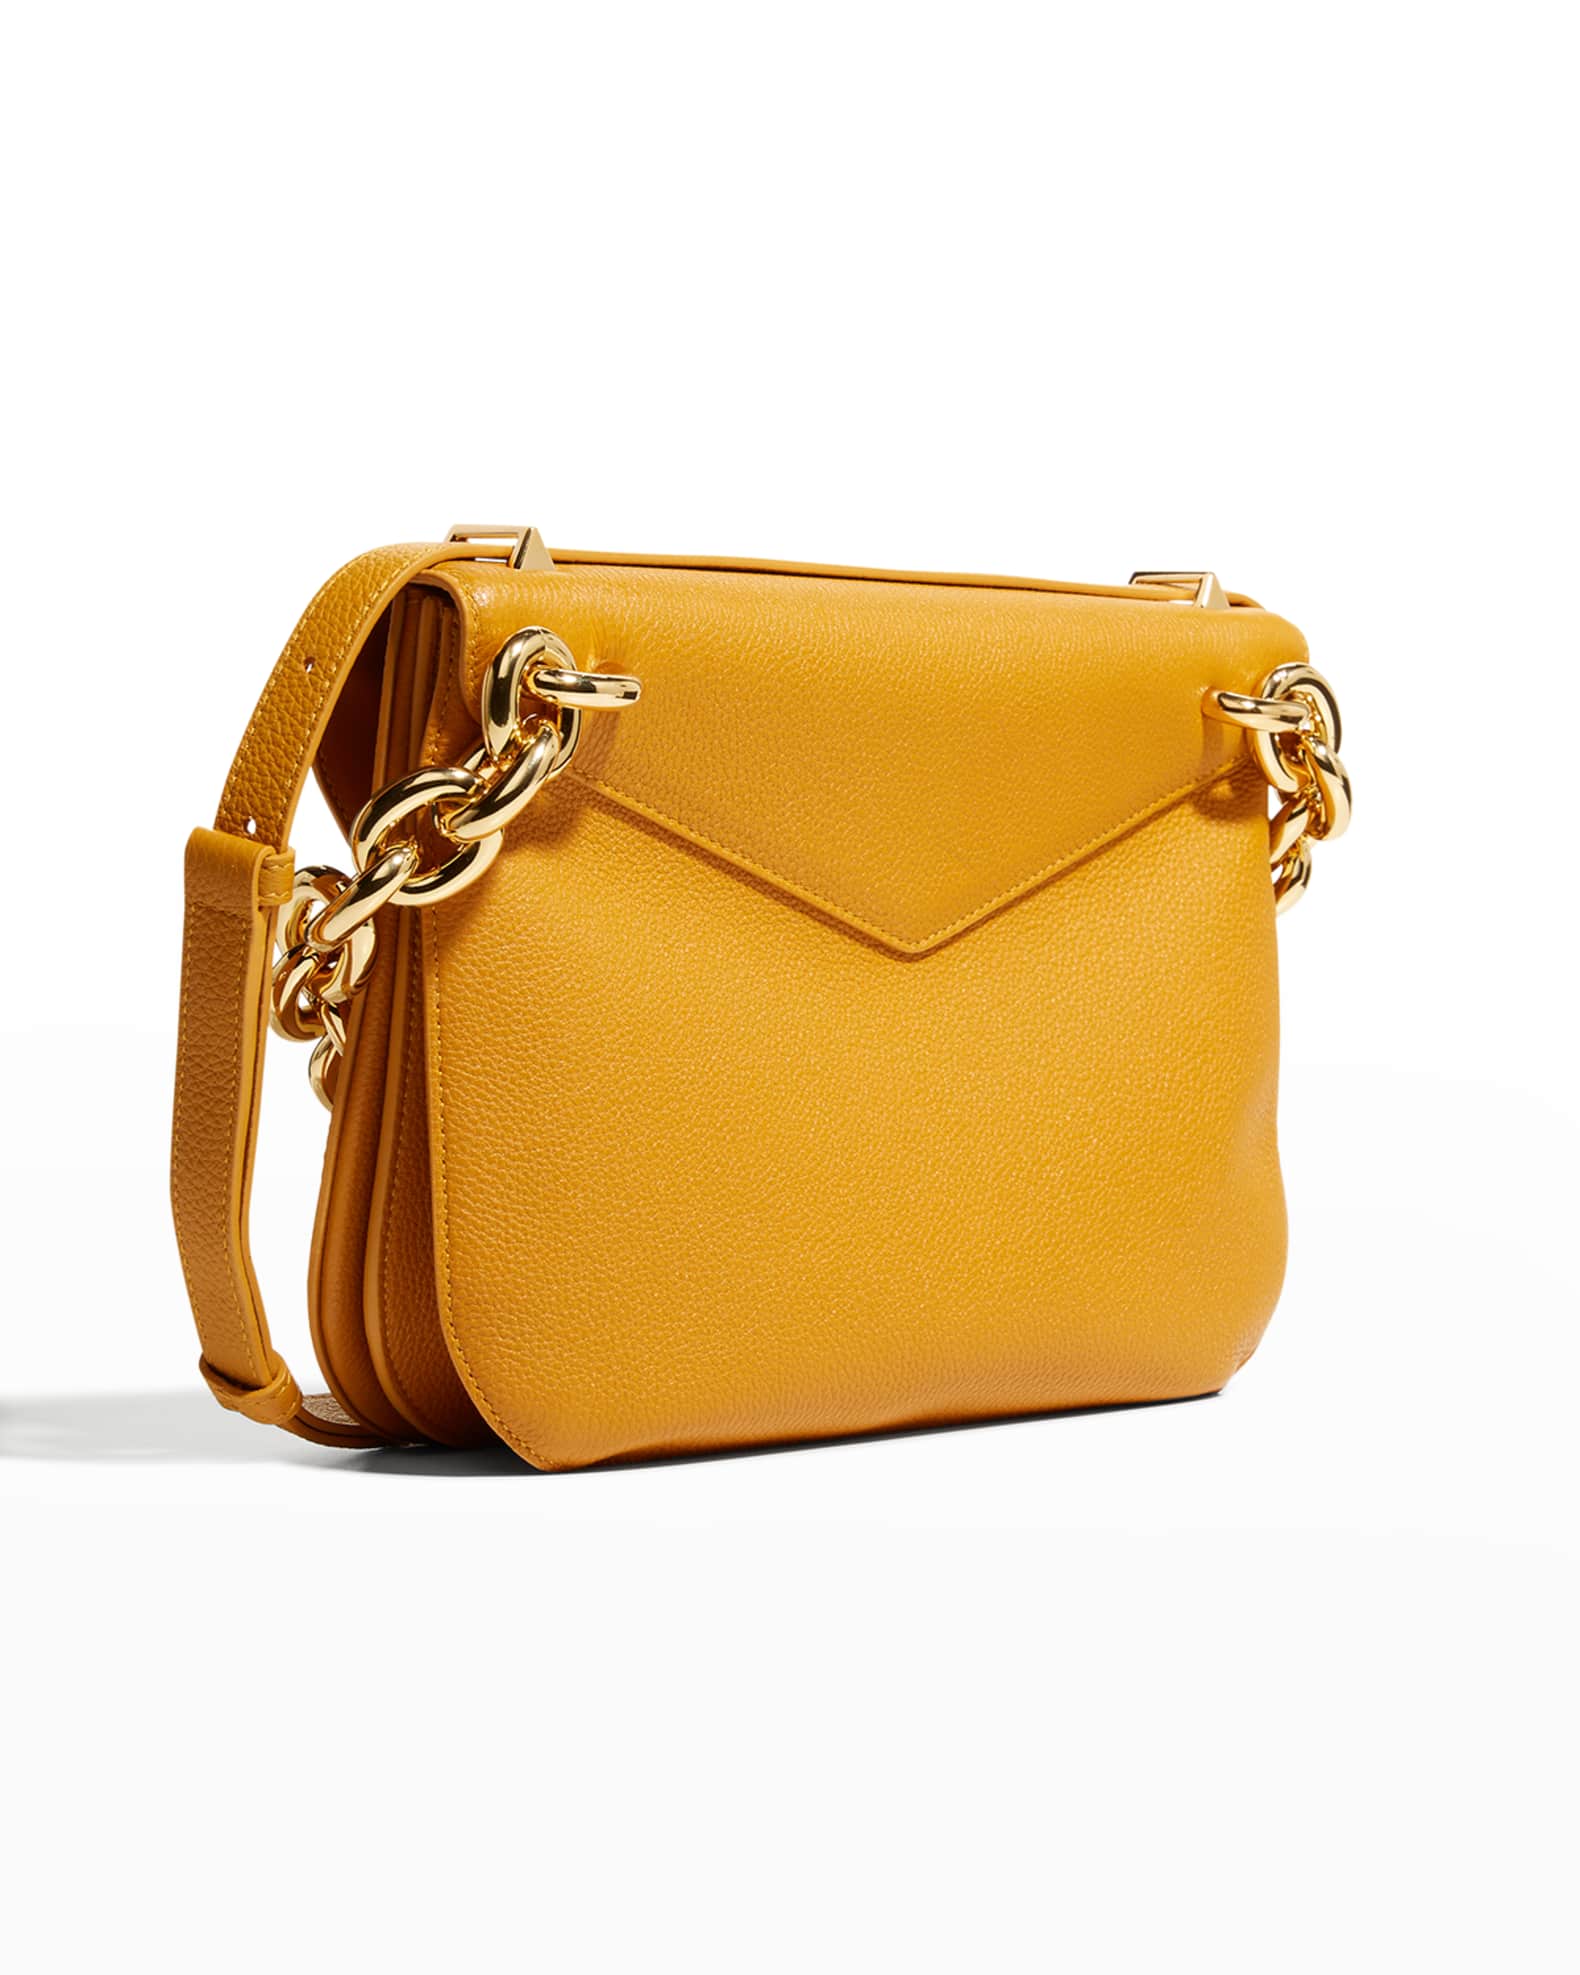 Bottega Veneta Mount Envelope Bag | Neiman Marcus